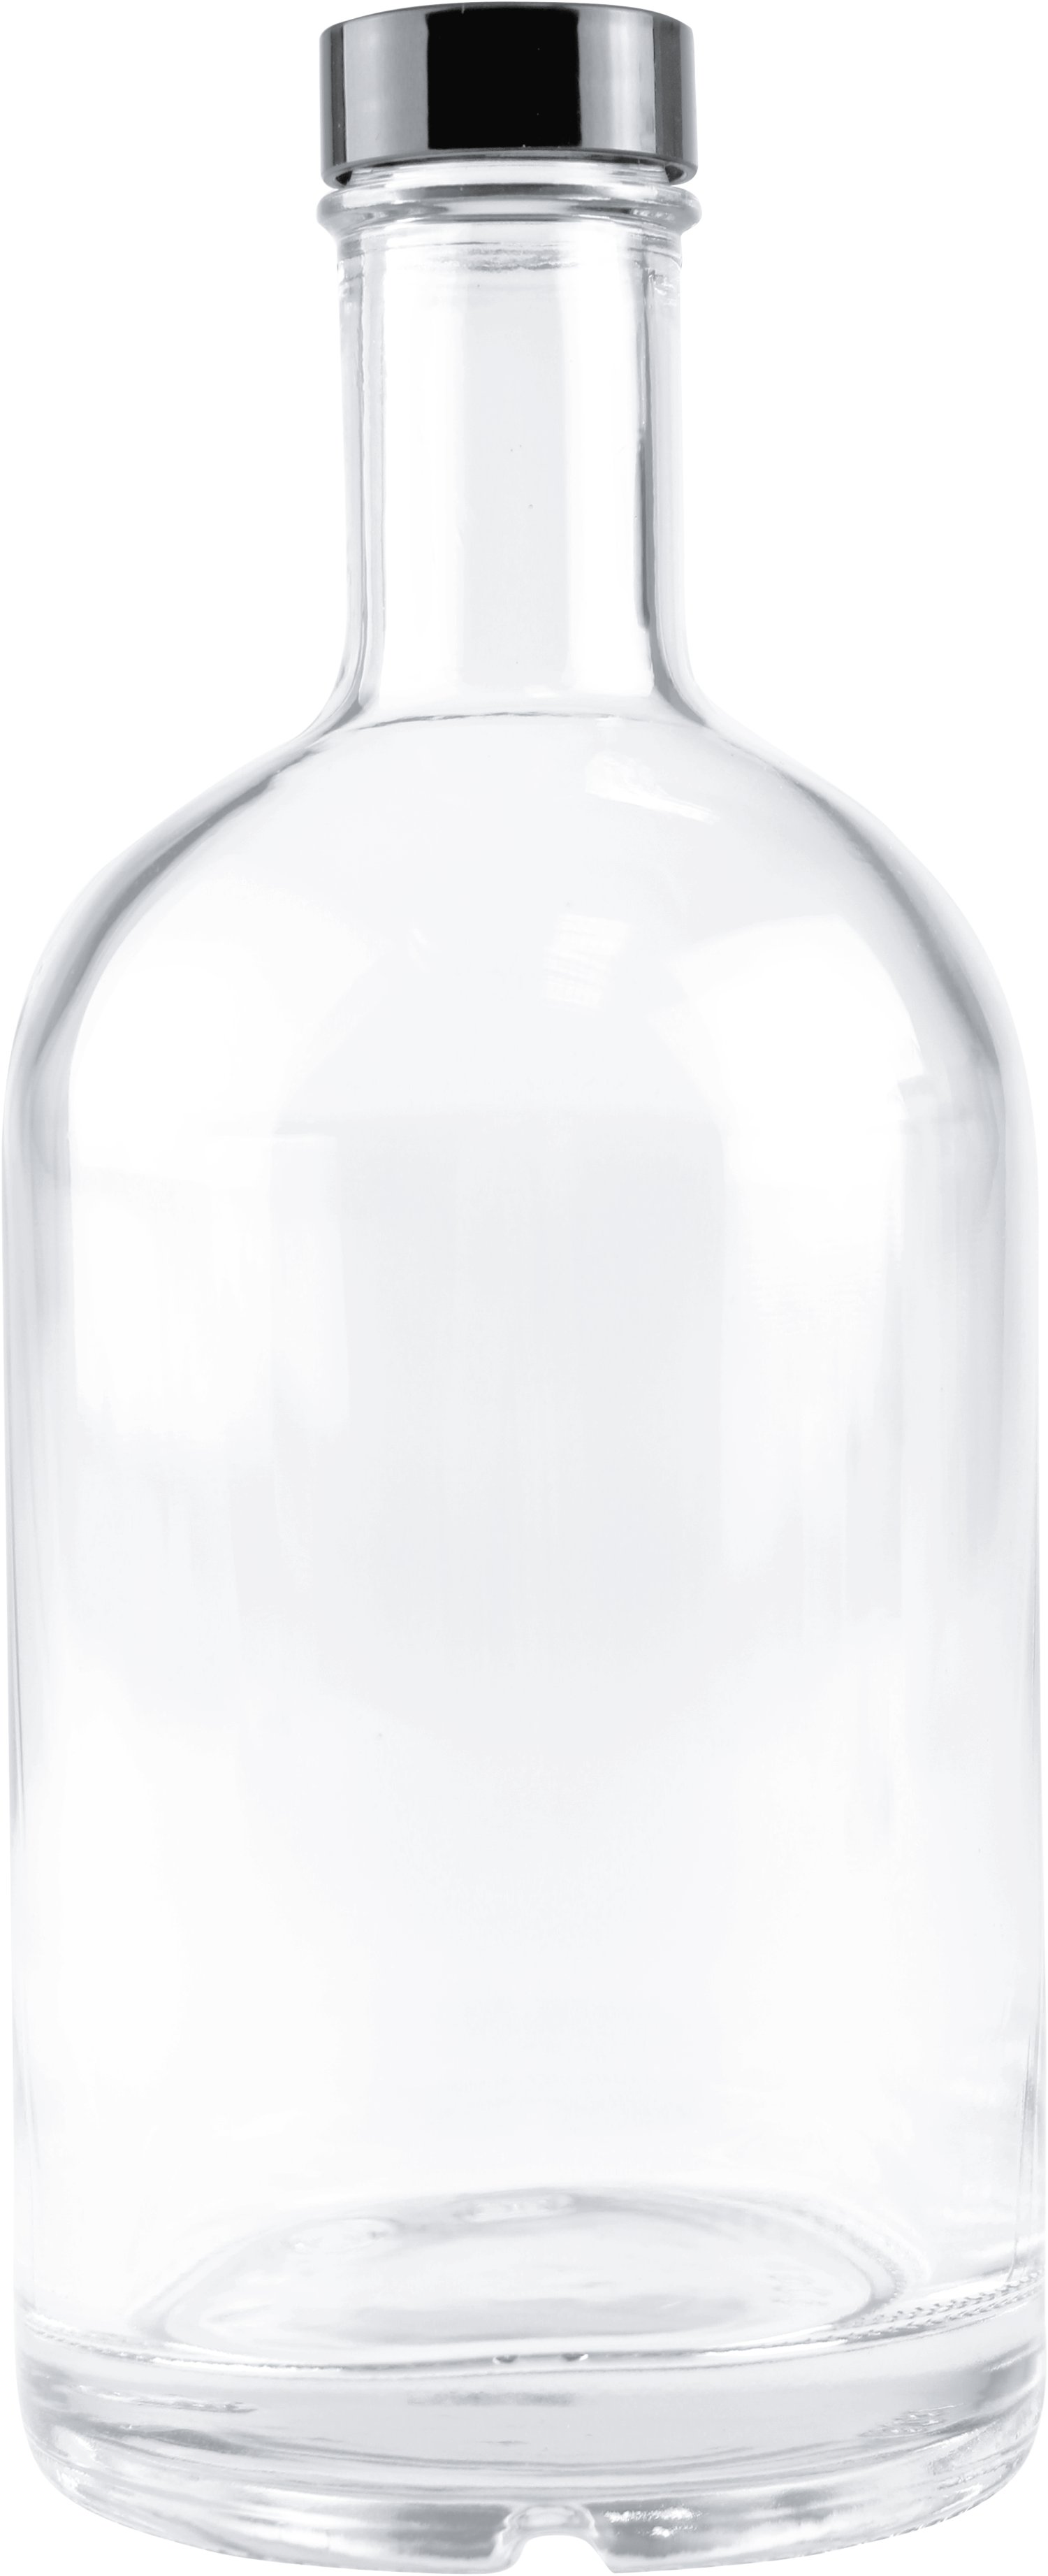 Osloflasche mit Schraubverschluss, 500 ml